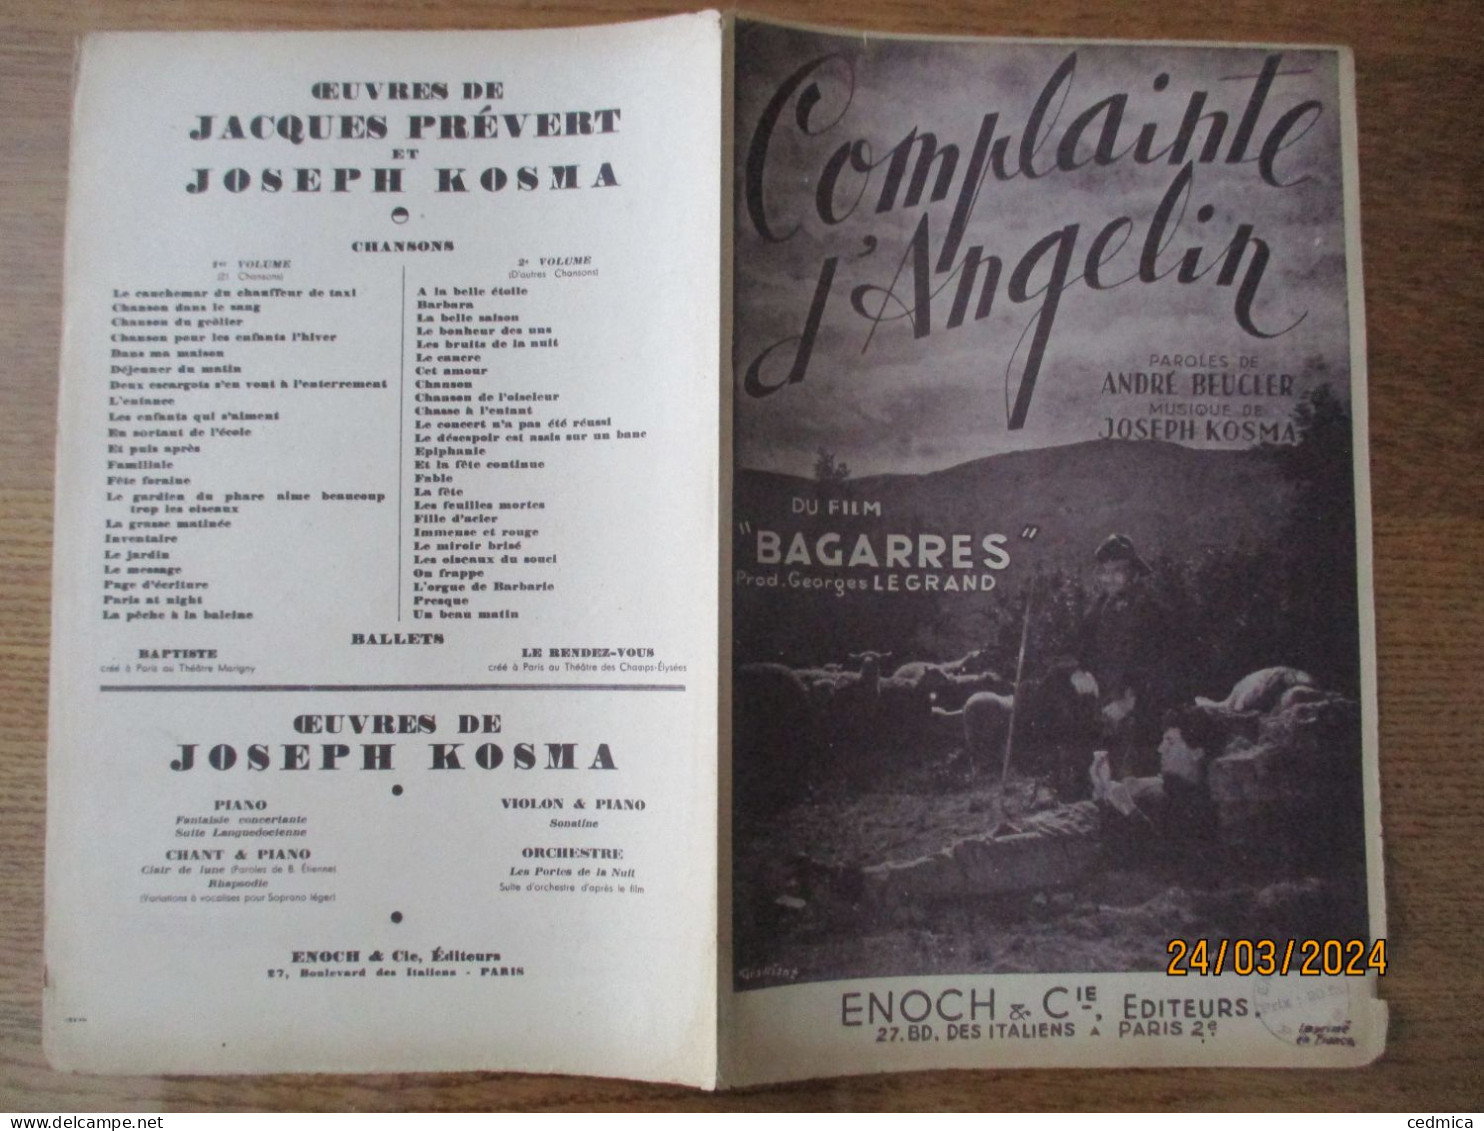 COMPLAINTE D'ANGELIN DU FILM "BAGARRES" PAROLES DE ANDRE BEUCLER MUSIQUE DE JOSEPH KOSMA - Spartiti